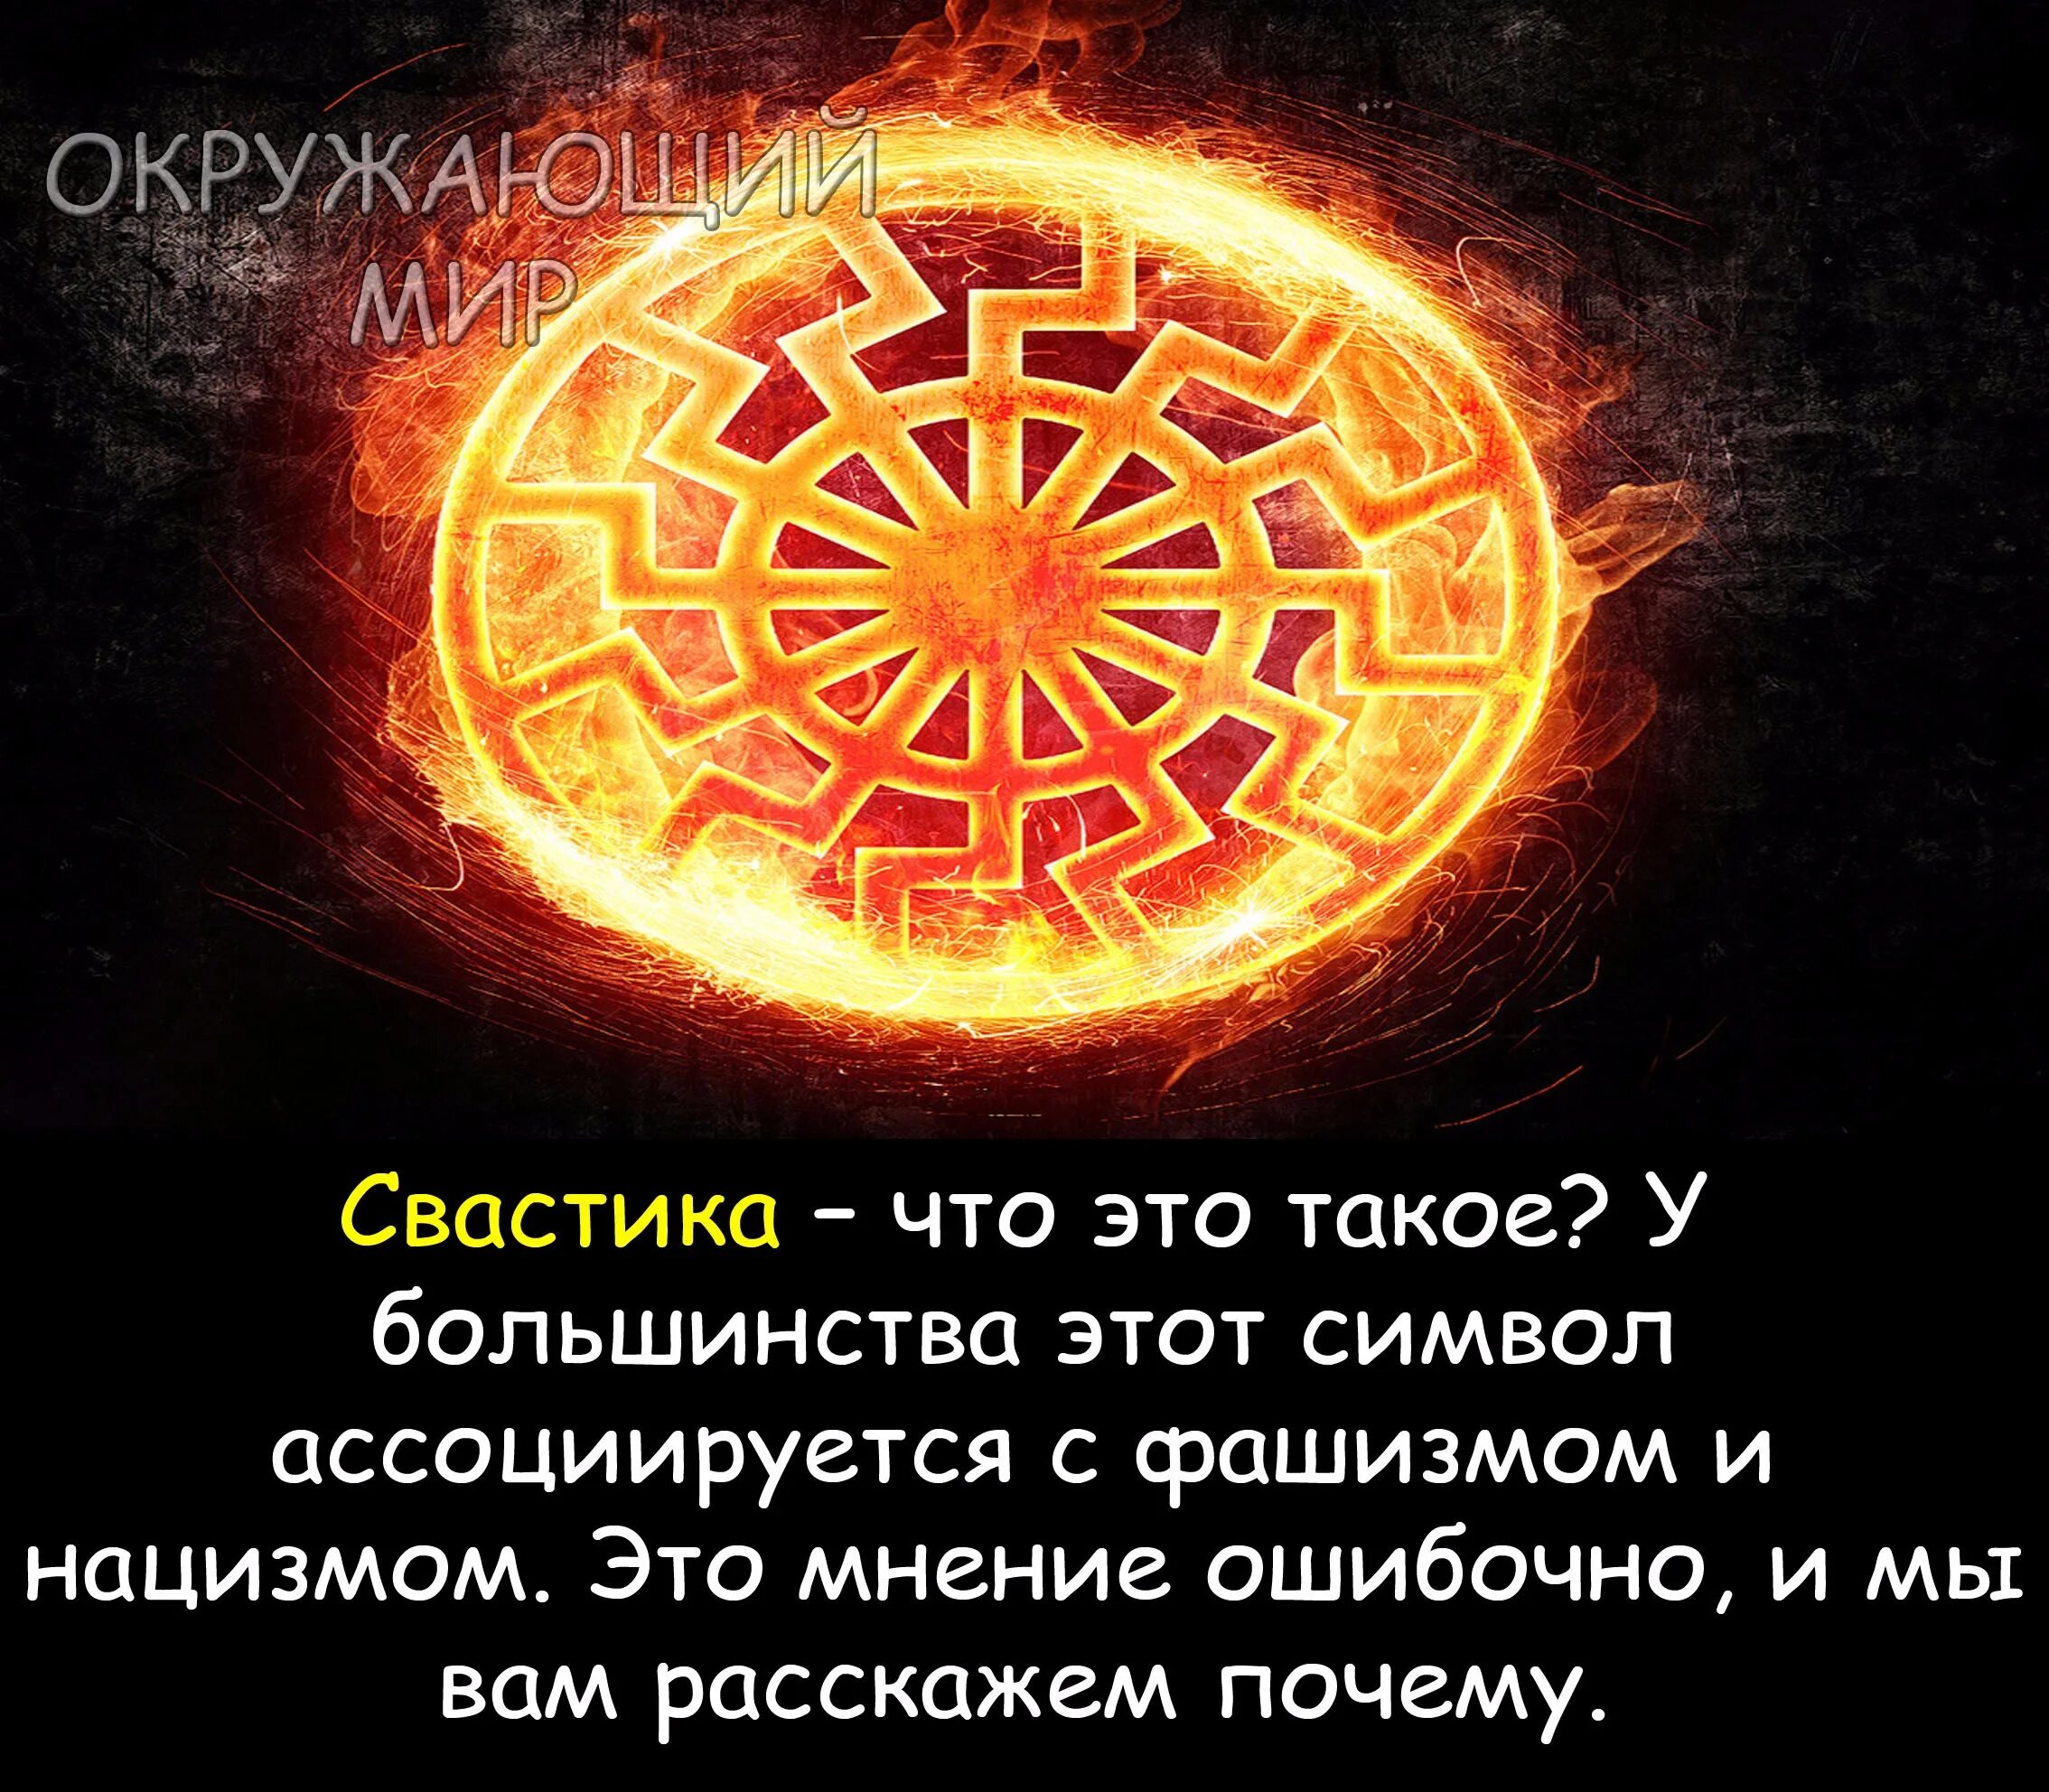 Черное солнце значение символа. Славянские символы. Чёрное солнце символ славян. Знак солнца у славян.